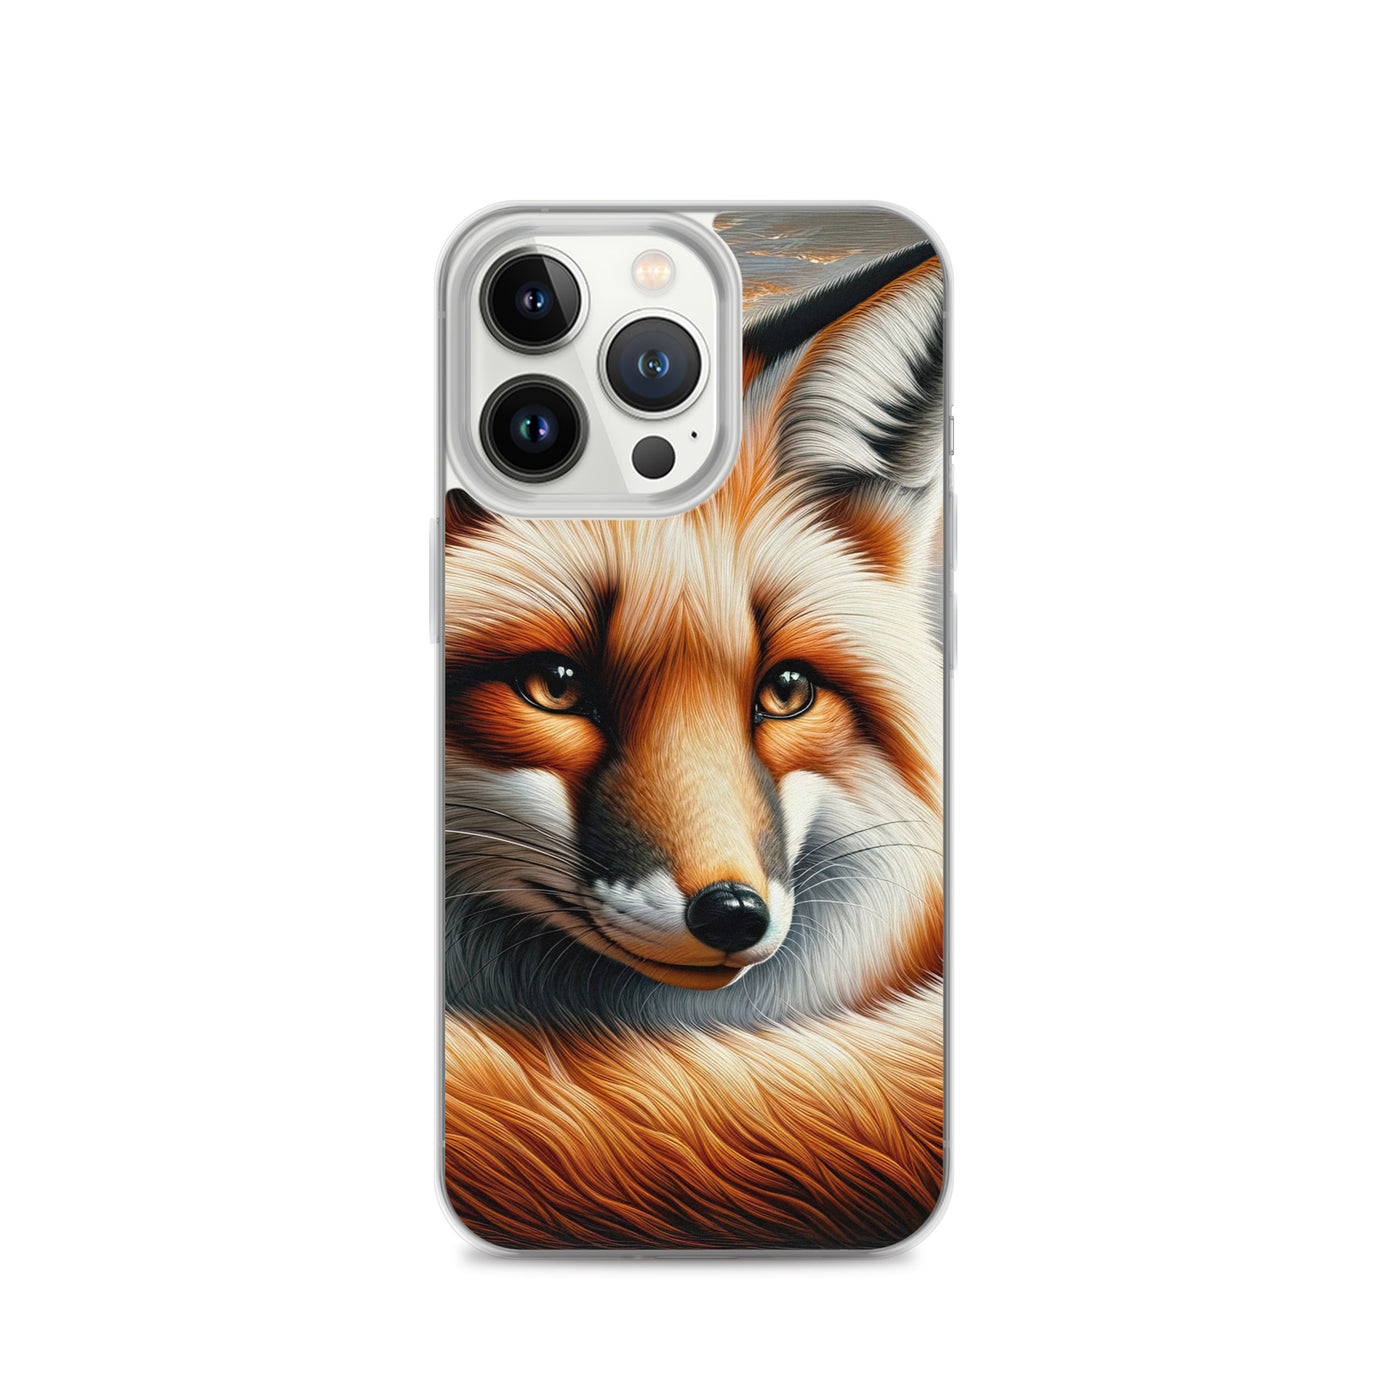 Ölgemälde eines nachdenklichen Fuchses mit weisem Blick - iPhone Schutzhülle (durchsichtig) camping xxx yyy zzz iPhone 13 Pro